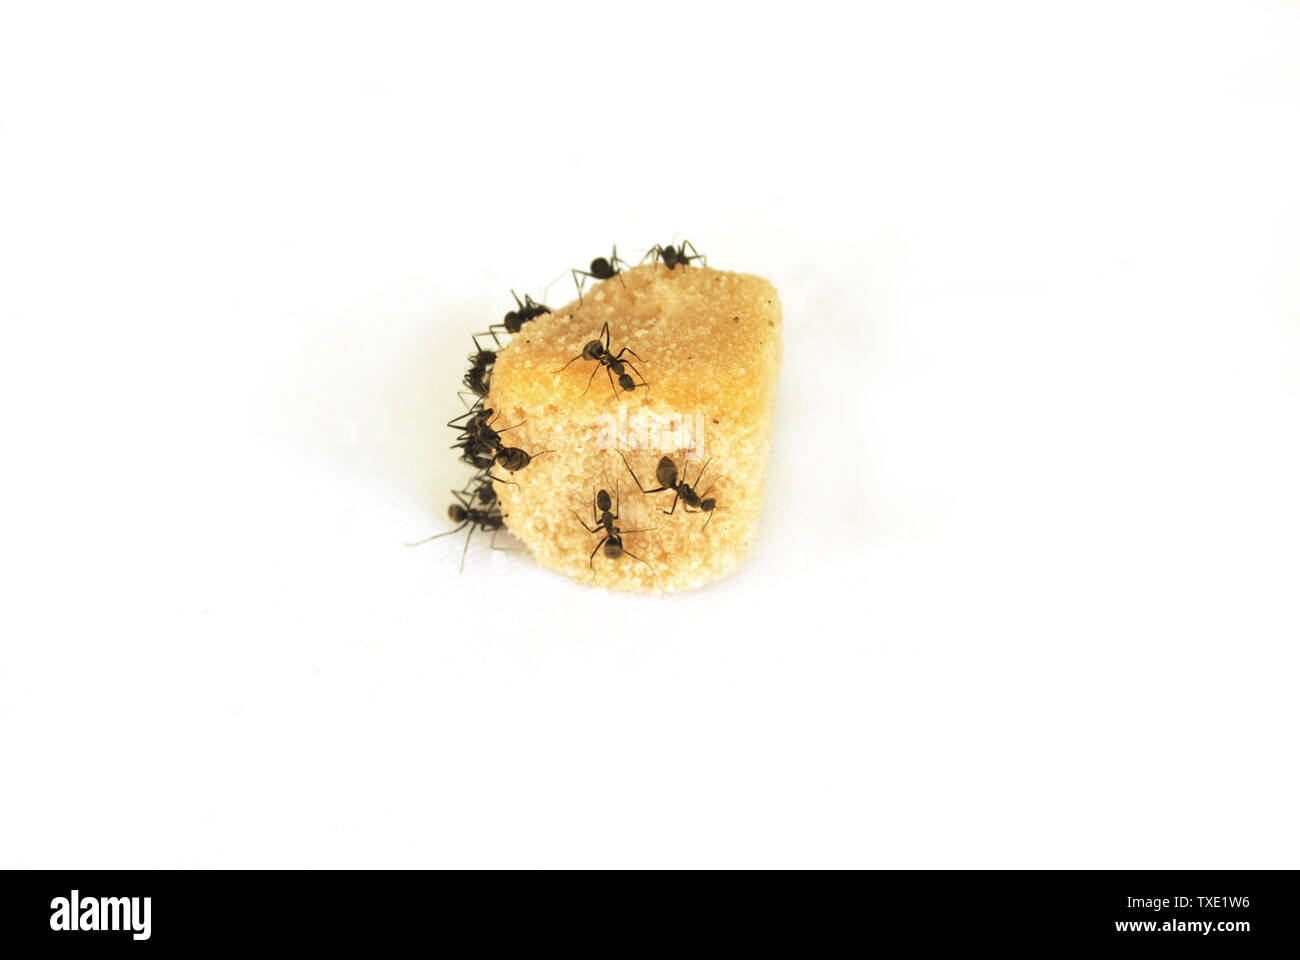 Les fourmis mangent du sucre sur fond blanc. Banque D'Images